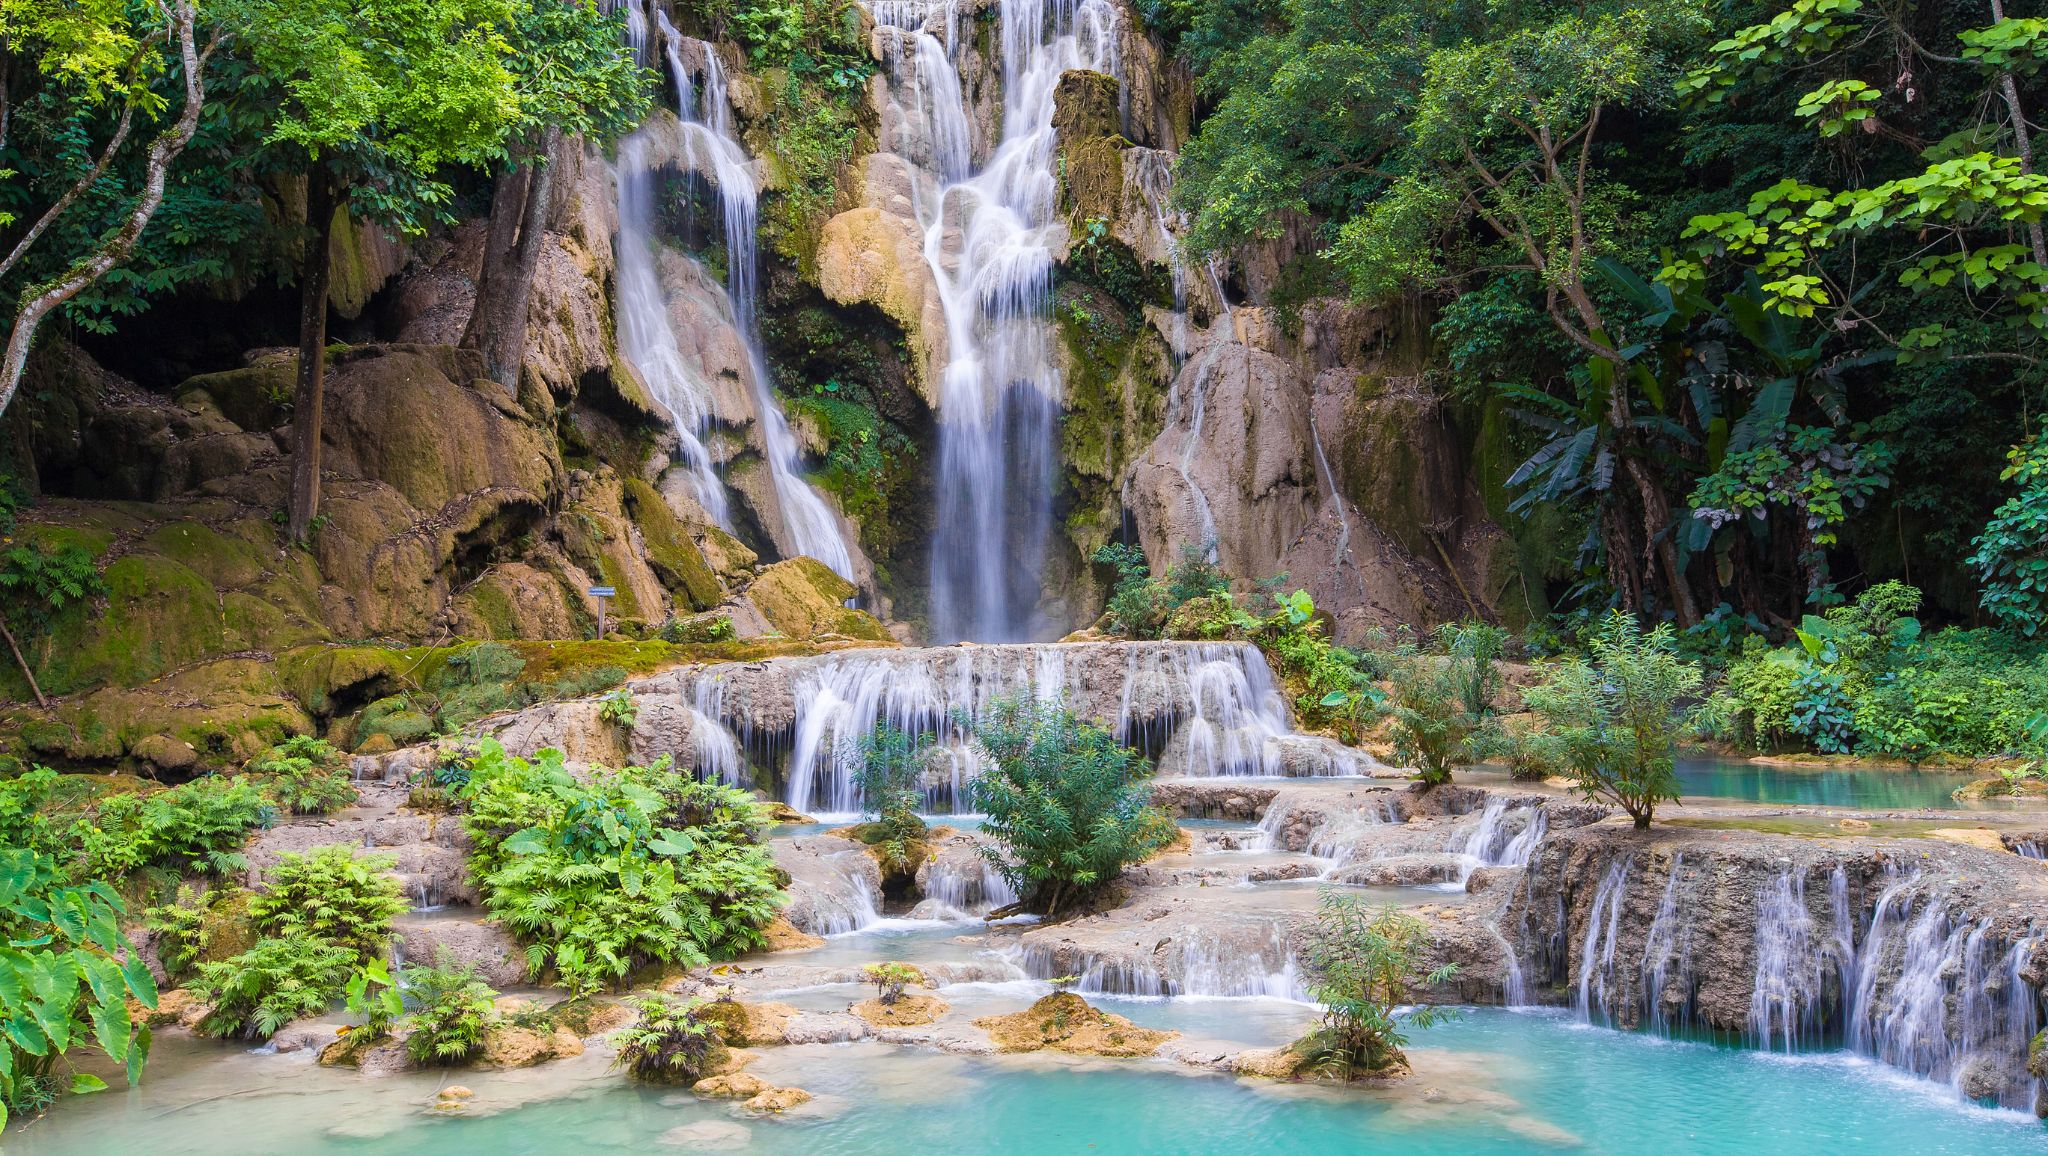 Day 16 Explore The Enchanting Kuang Si Waterfalls